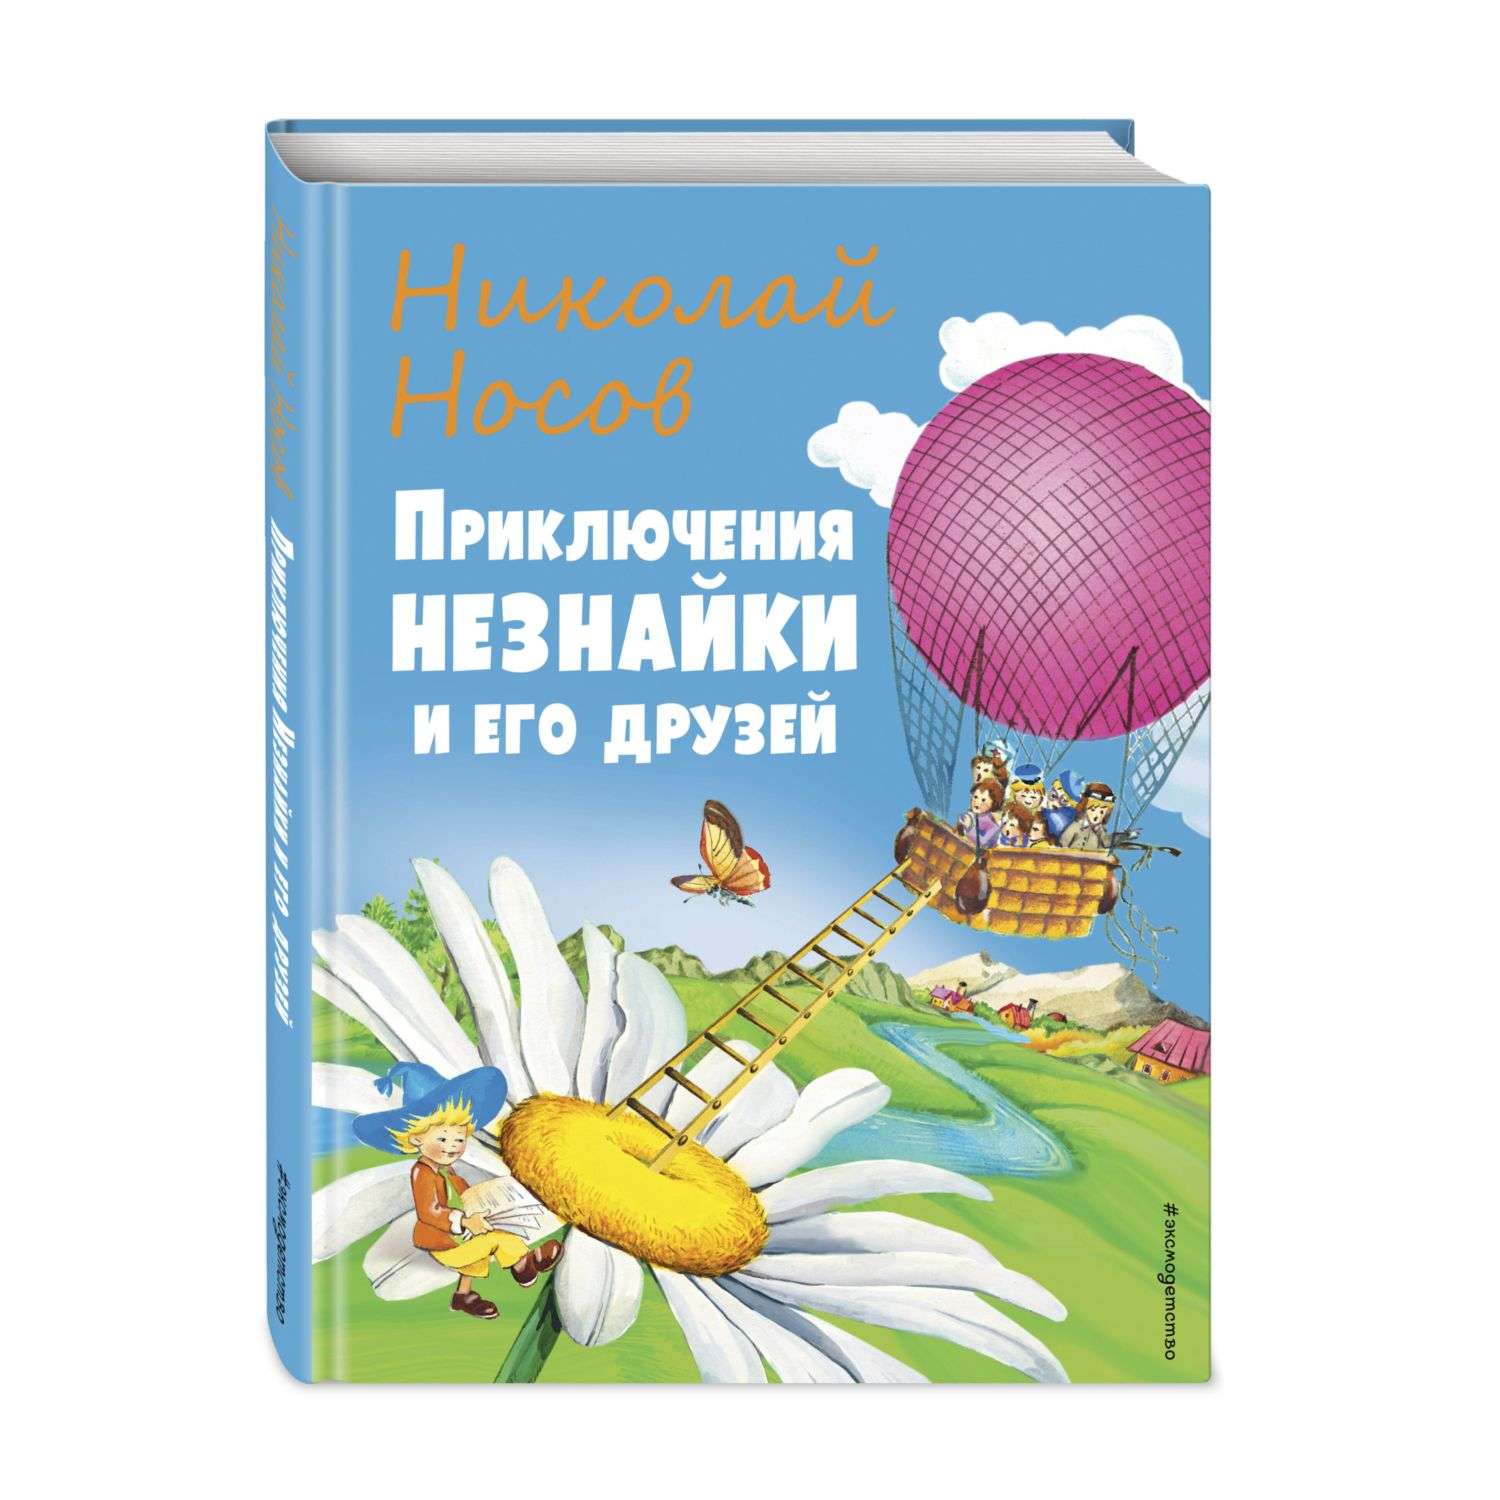 Книга Приключения Незнайки и его друзей иллюстрации О.Чумаковой - фото 1